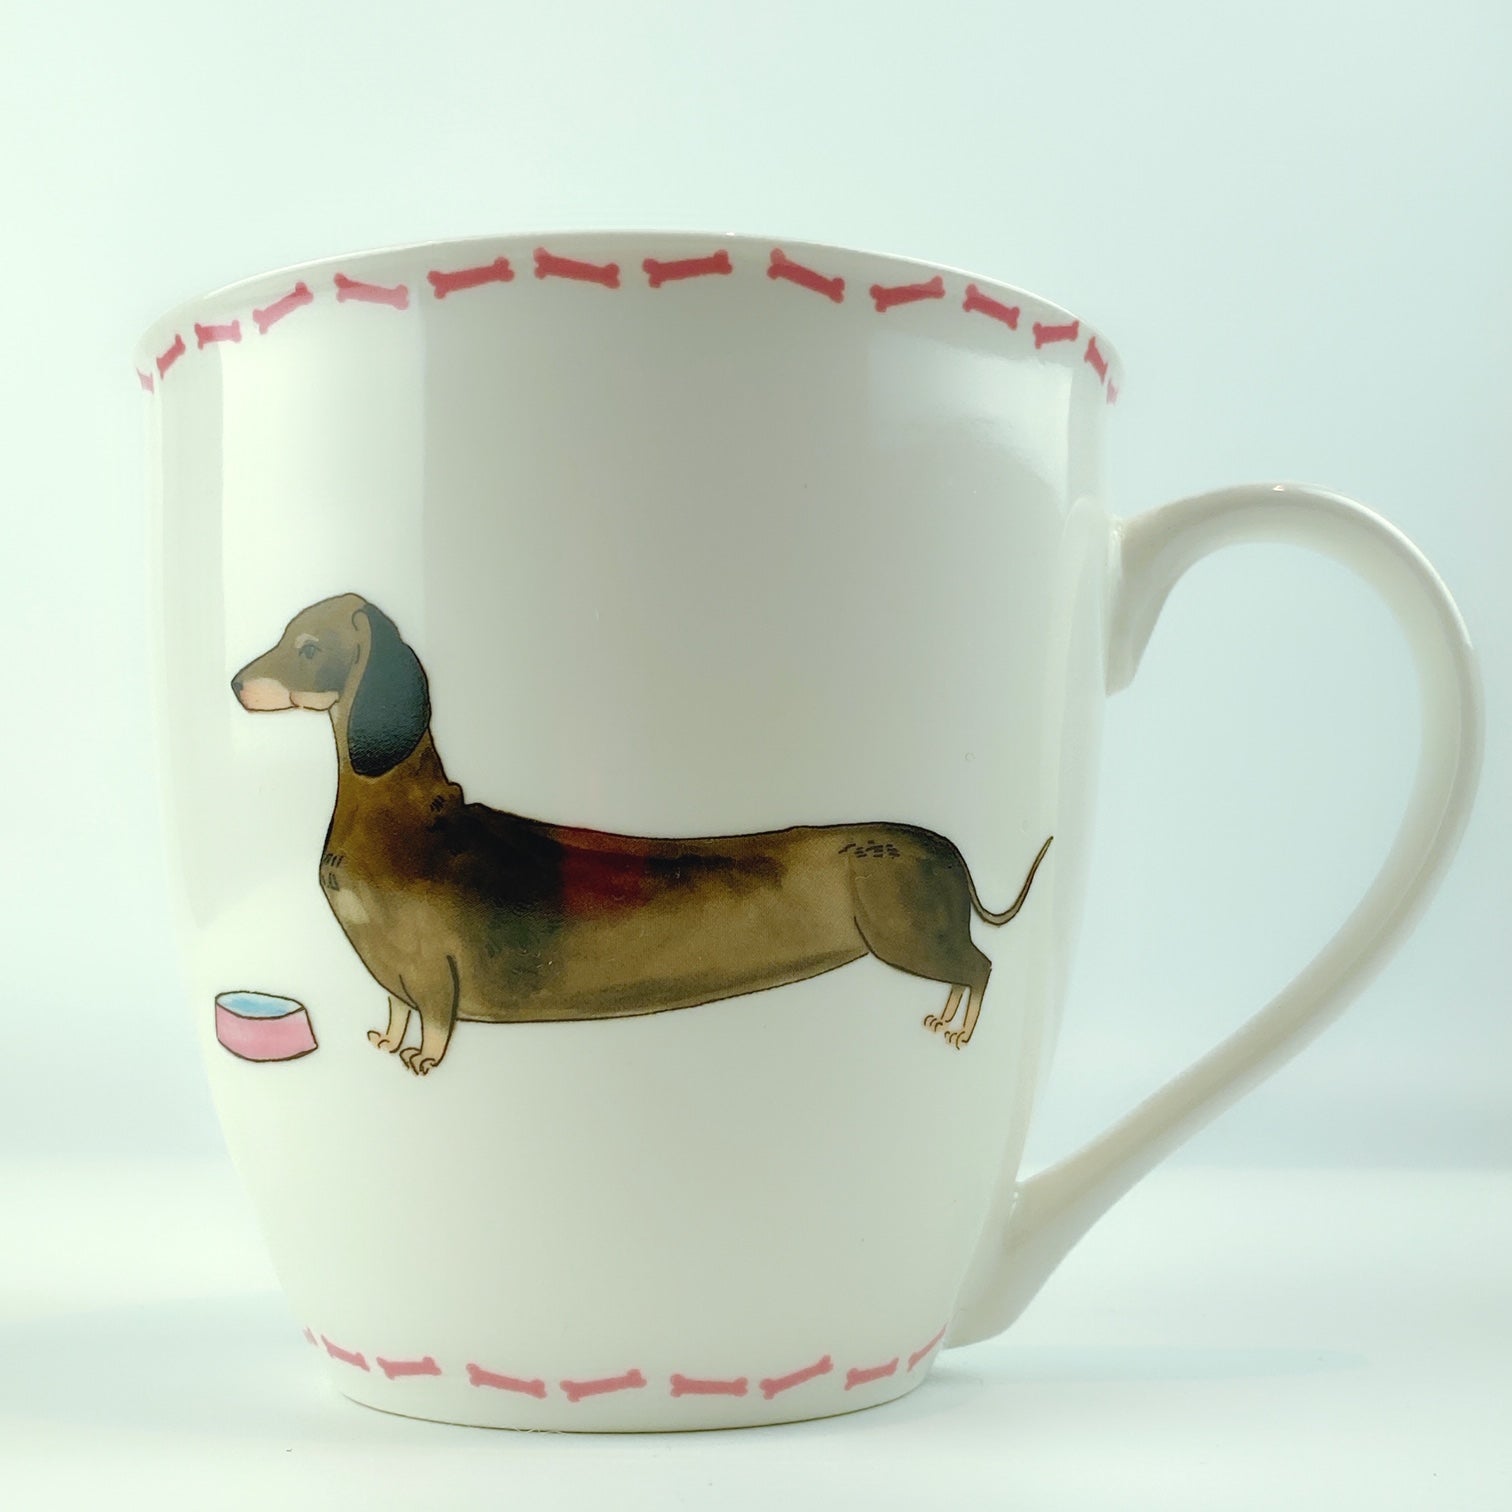 Milly Green British Design Dachshund Dog Coffee Mug Tea Cup 20 oz – Pit ...